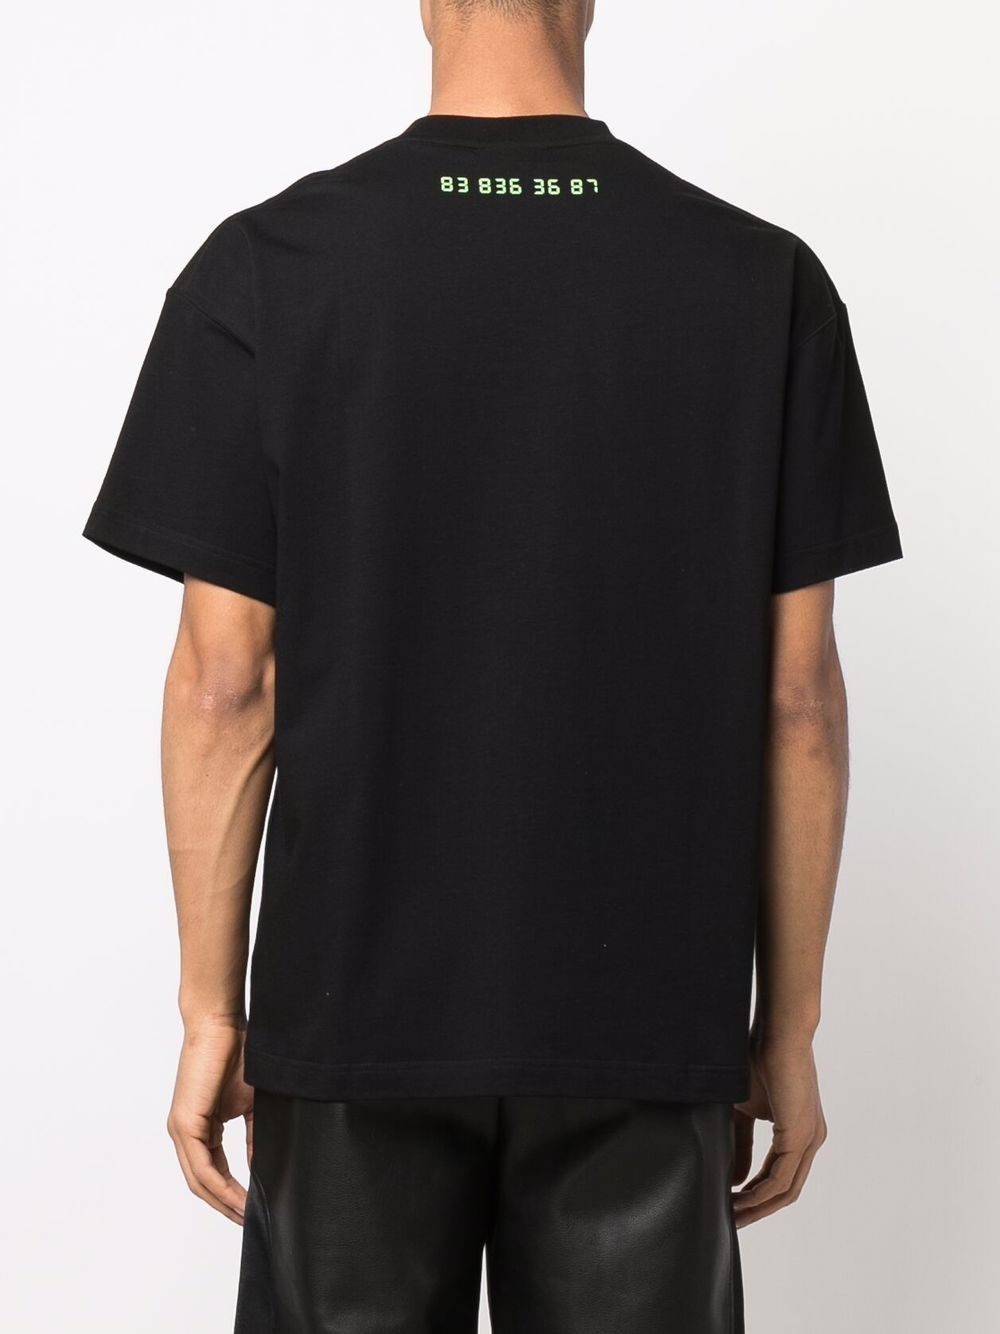 T-shirt in cotone nero con stampa di un orologio